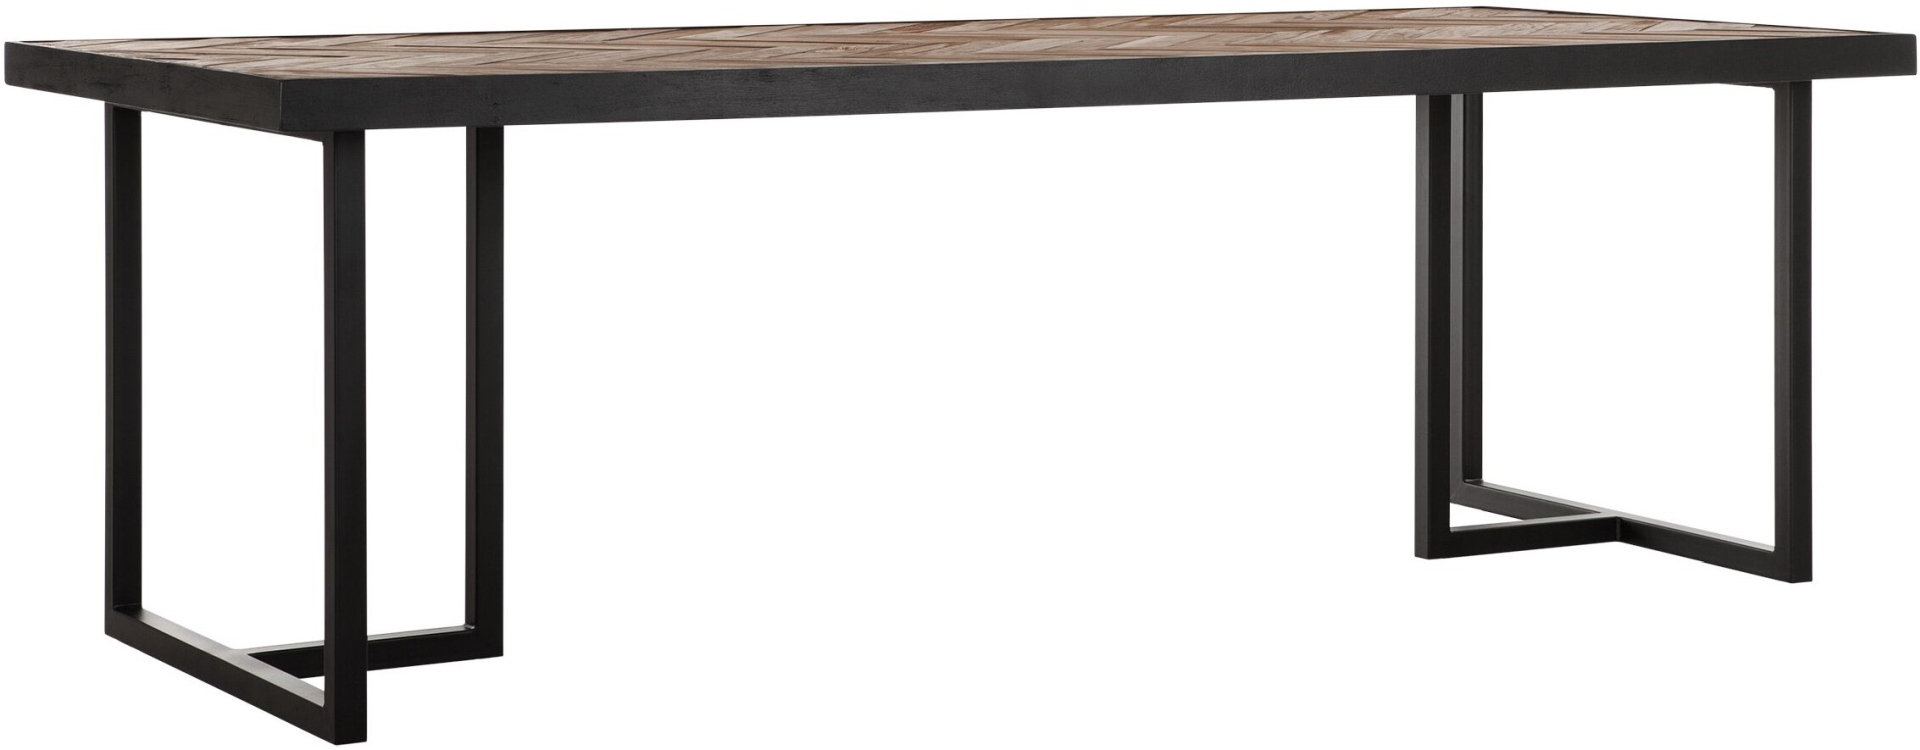 Der Esstisch Criss Cross überzeugt mit seinem massivem aber auch modernem Design. Gefertigt wurde er aus verschiedenen Holzarten, welche einen natürlichen und schwarzen Farbton besitzen. Der Tisch hat eine Länge von 240 cm.